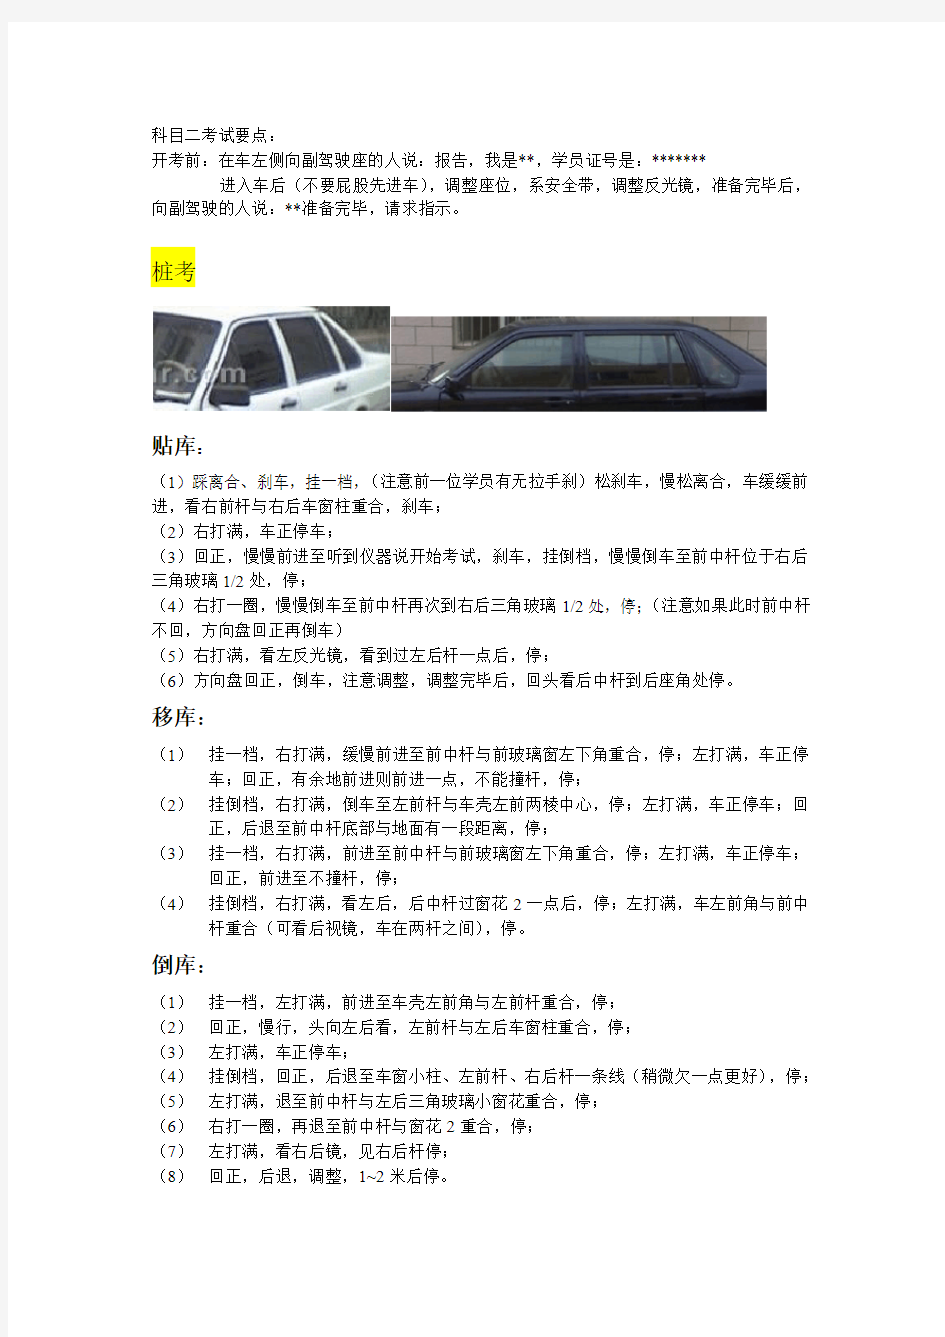 北京驾照科目二考试要点和注意事项总结